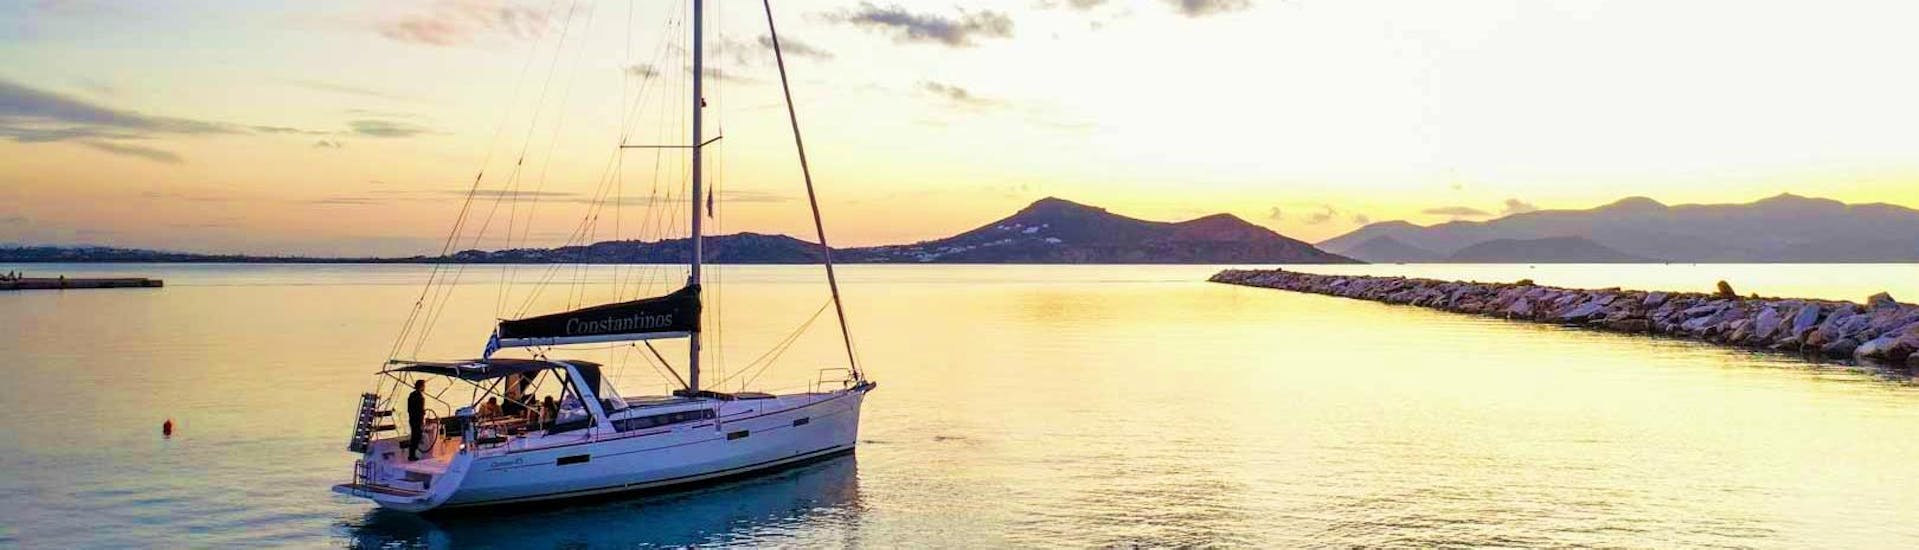 Die Segelyacht von Naxos Catamaran, die verschiedene Bootstouren vom Hafen von Naxos aus anbieten, ist der perfekte Ort, um den Sonnenuntergang über der Ägäis zu beobachten.